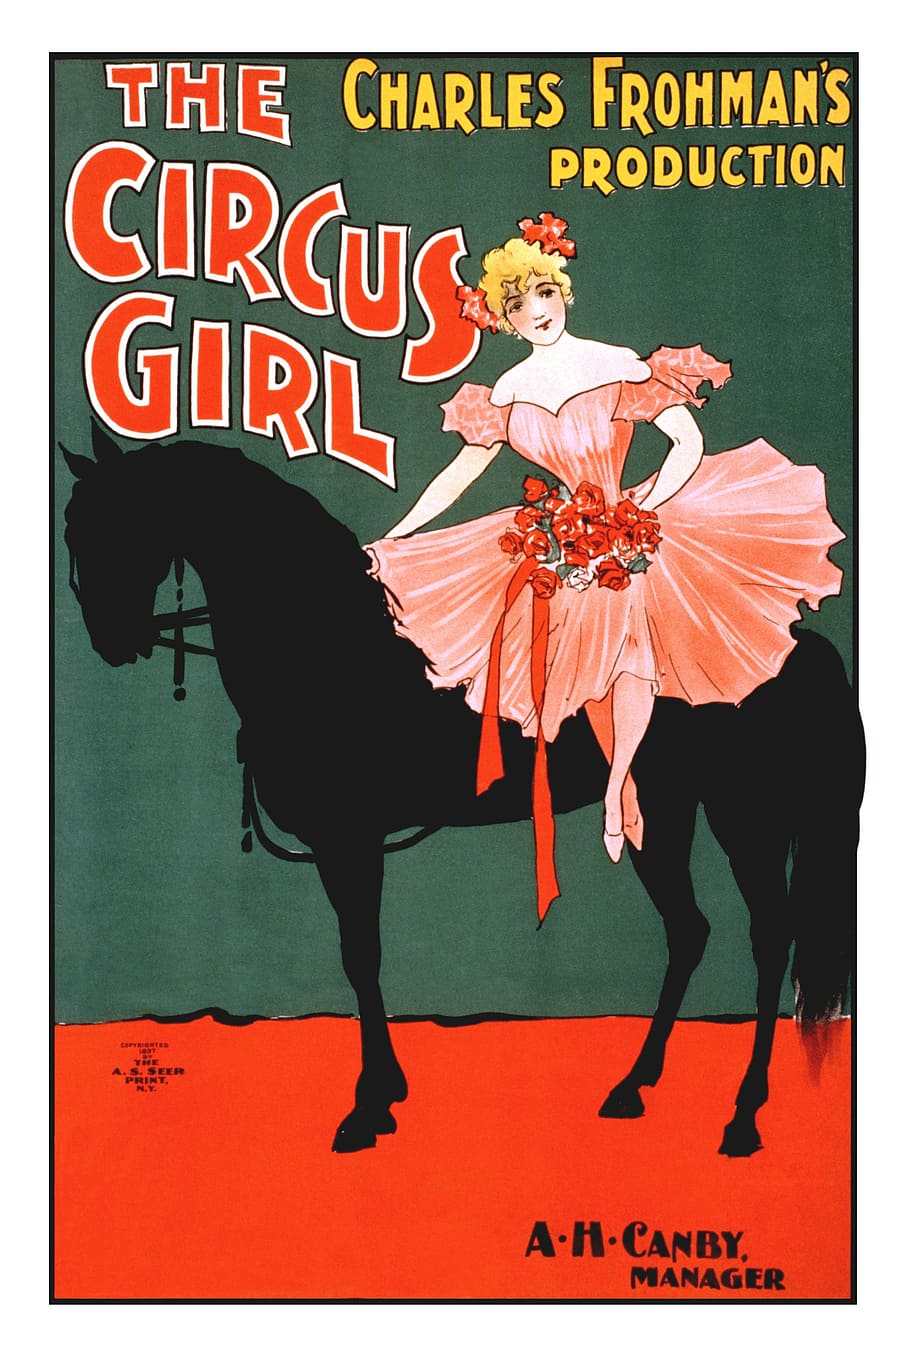 poster gadis sirkus, gadis sirkus, model tahun, poster, gadis, sirkus, kuda, hiburan, hewan, ilustrasi